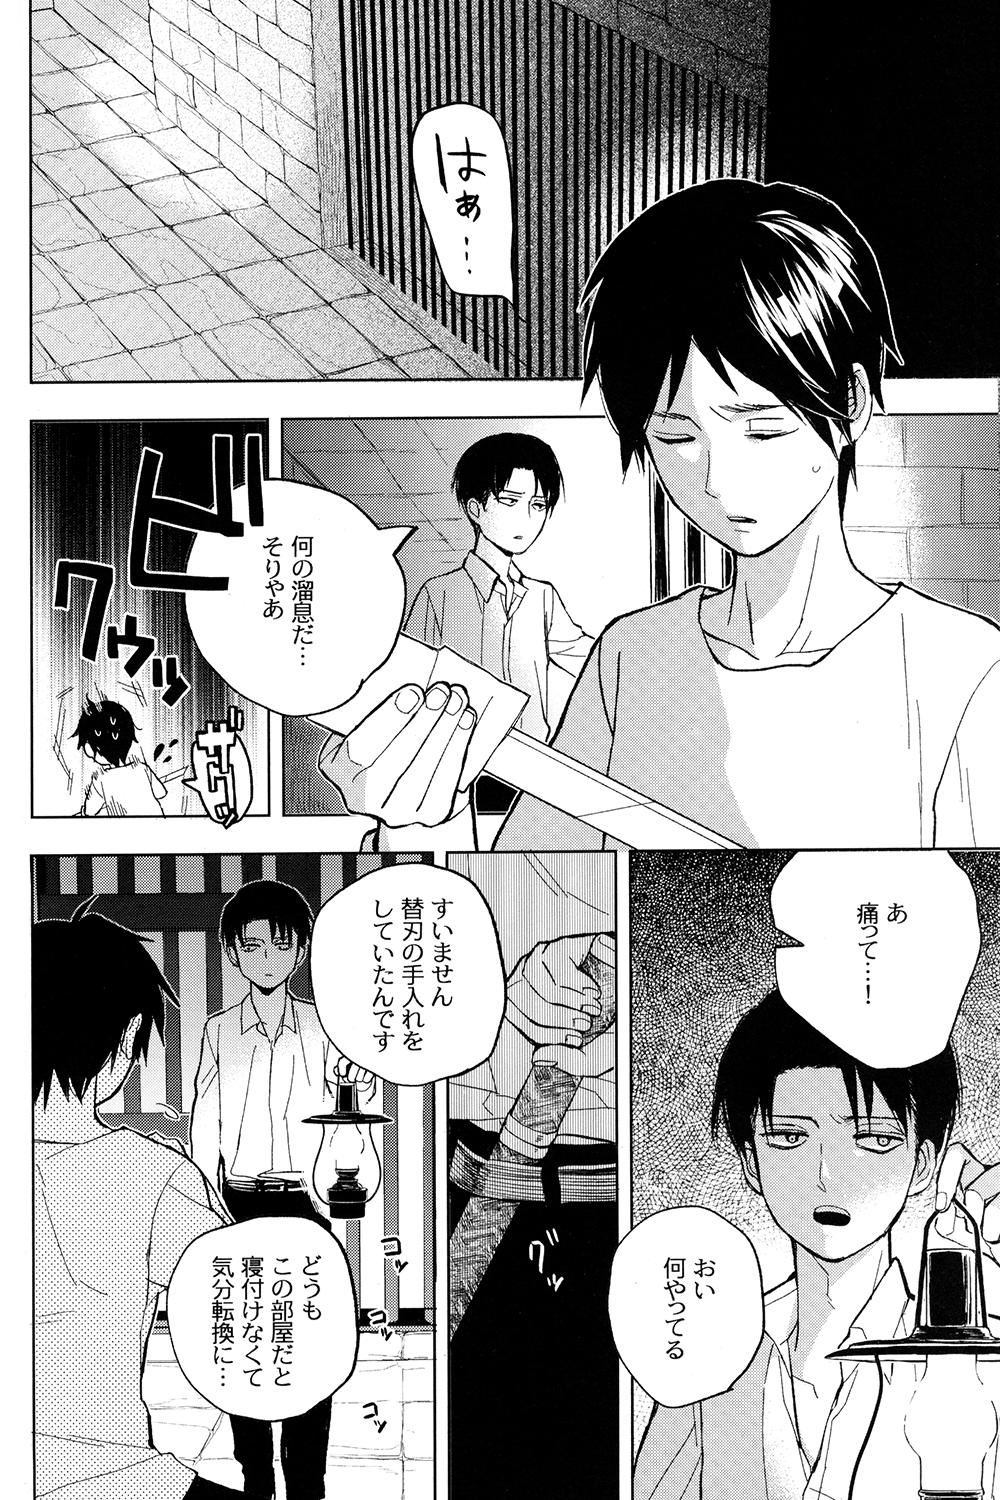 Toilet Sore Igai wa Hito ka, Ina ka - Shingeki no kyojin Roludo - Page 10